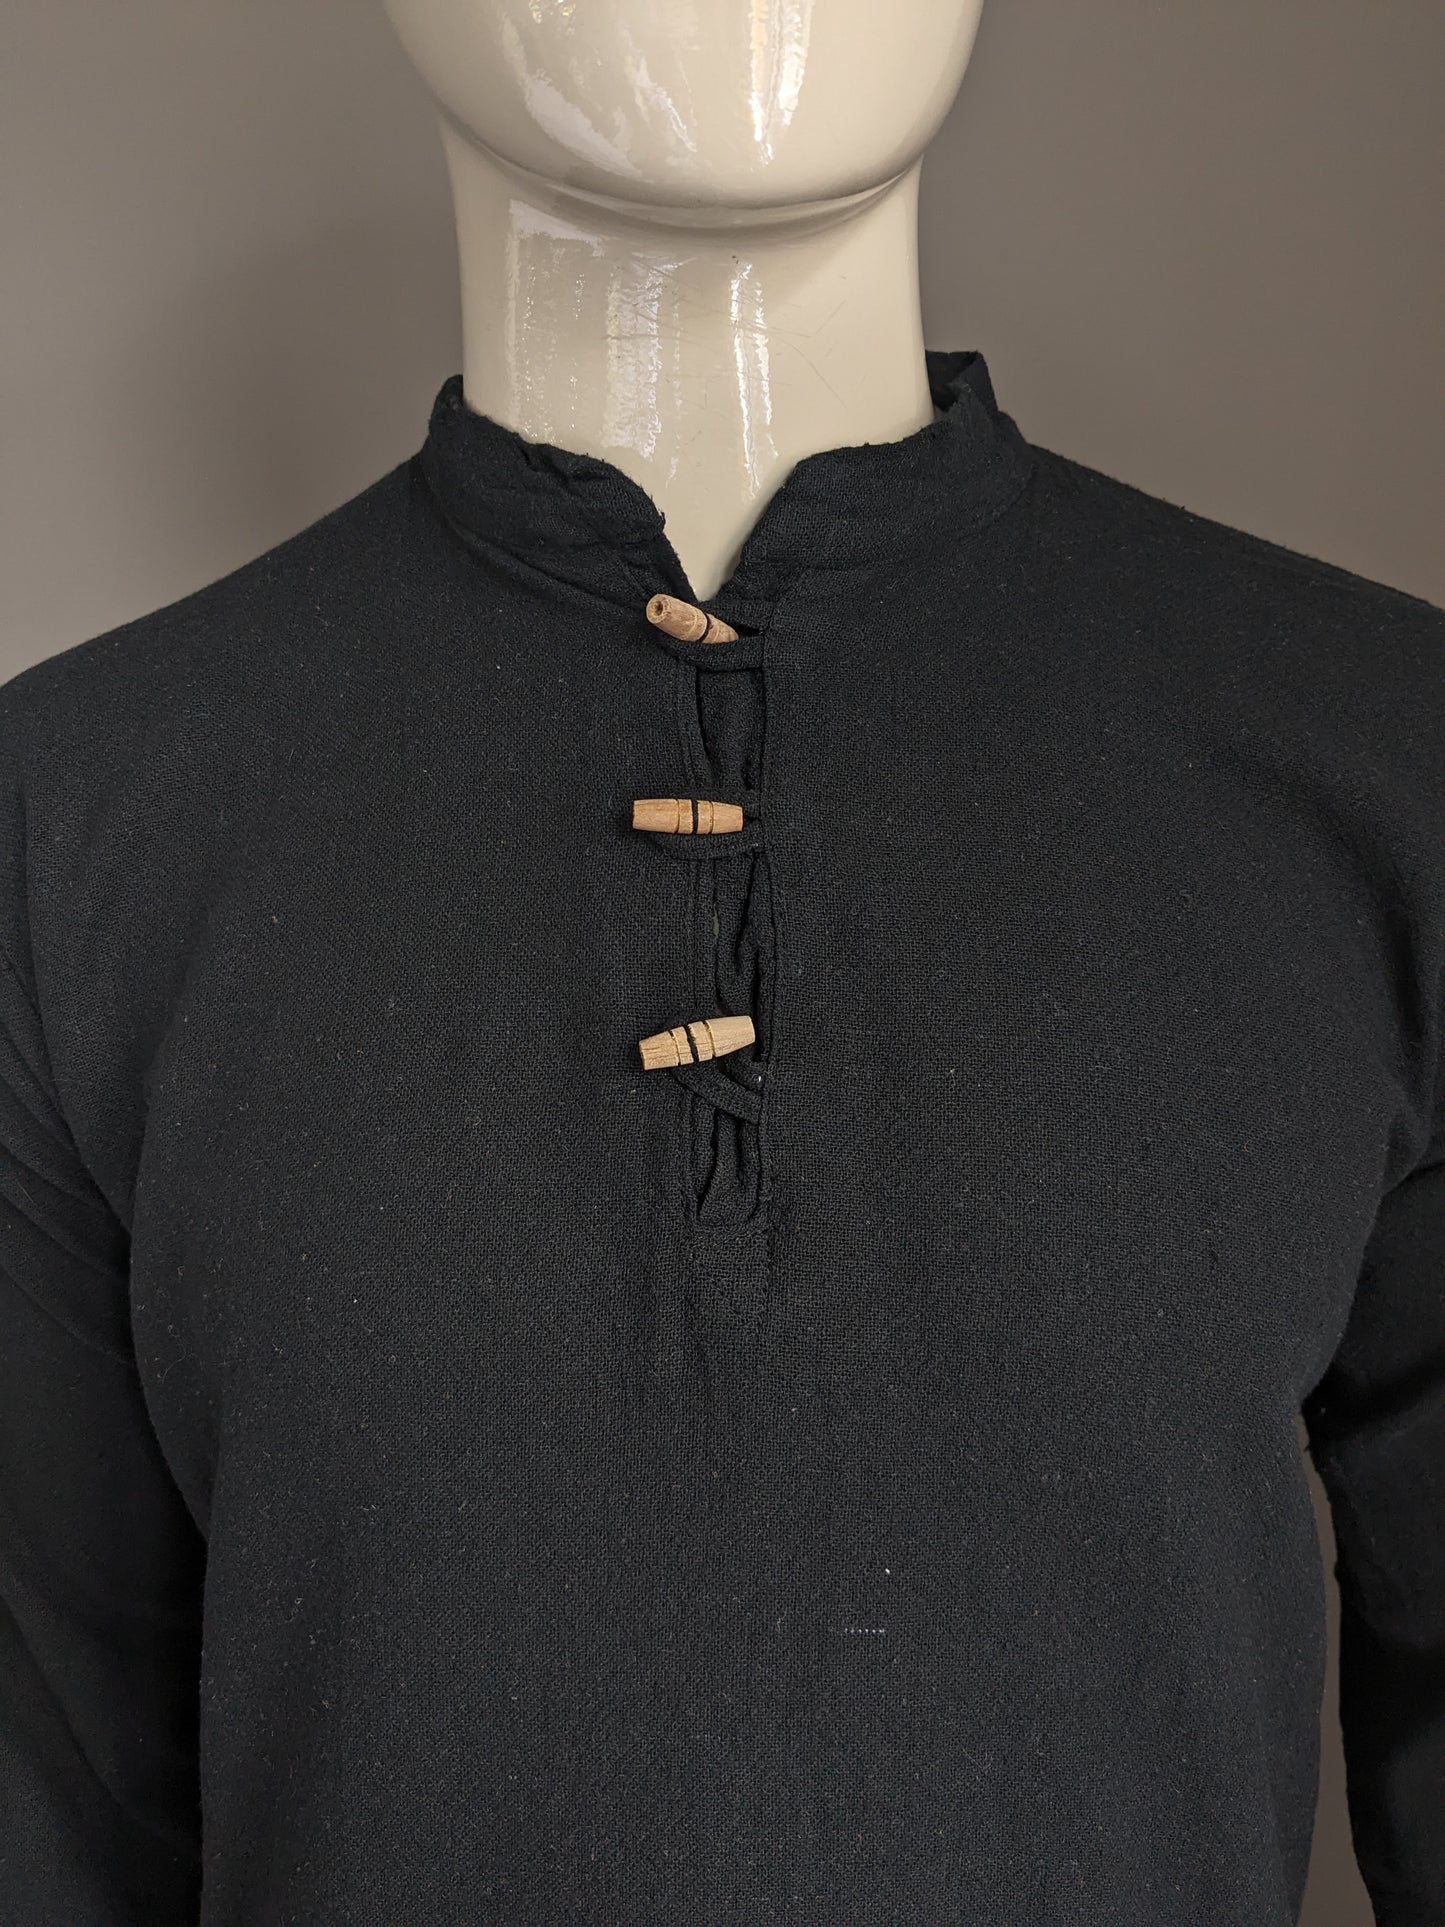 Vintage -Hemd mit 1 Beutel und MAO / Bauern / aufrechter Kragen. Schwarz gefärbt. Größe M.